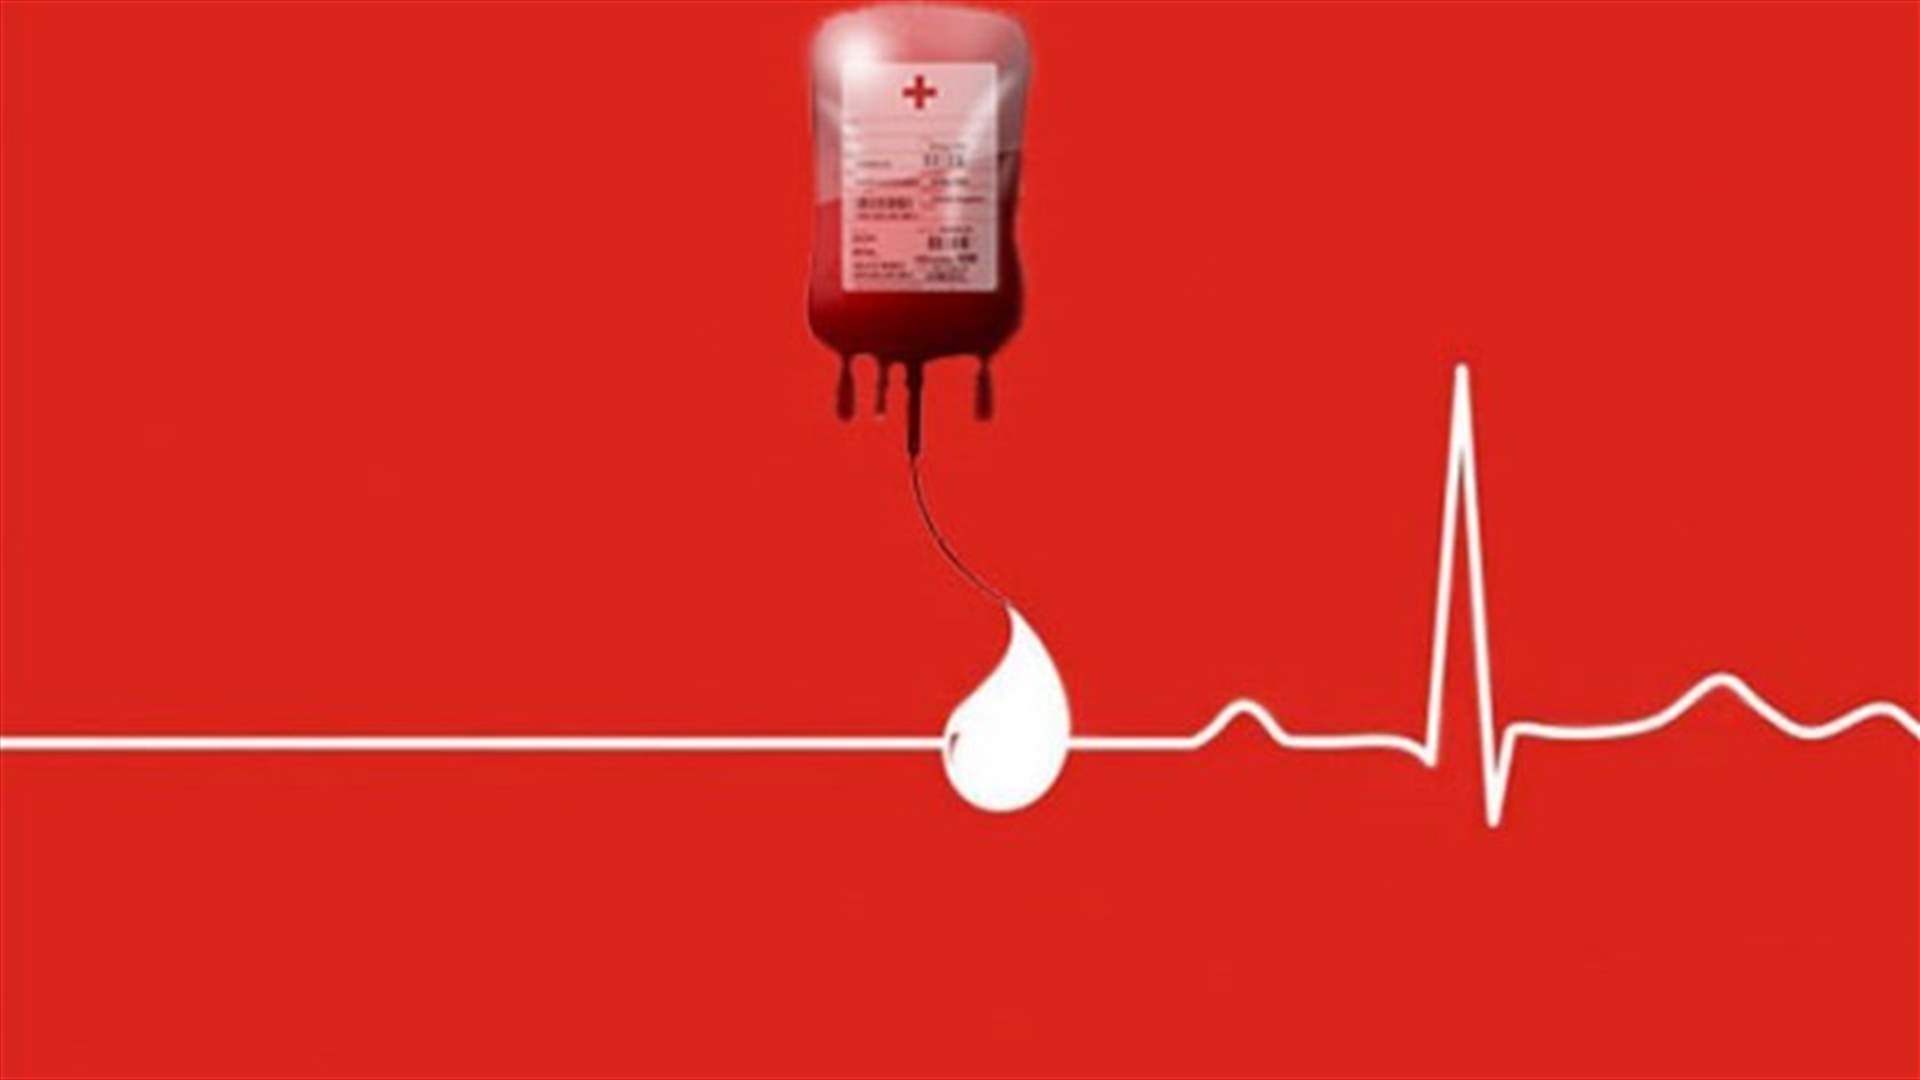  مطلوب دم من فئة O- في مستشفى بهمن 